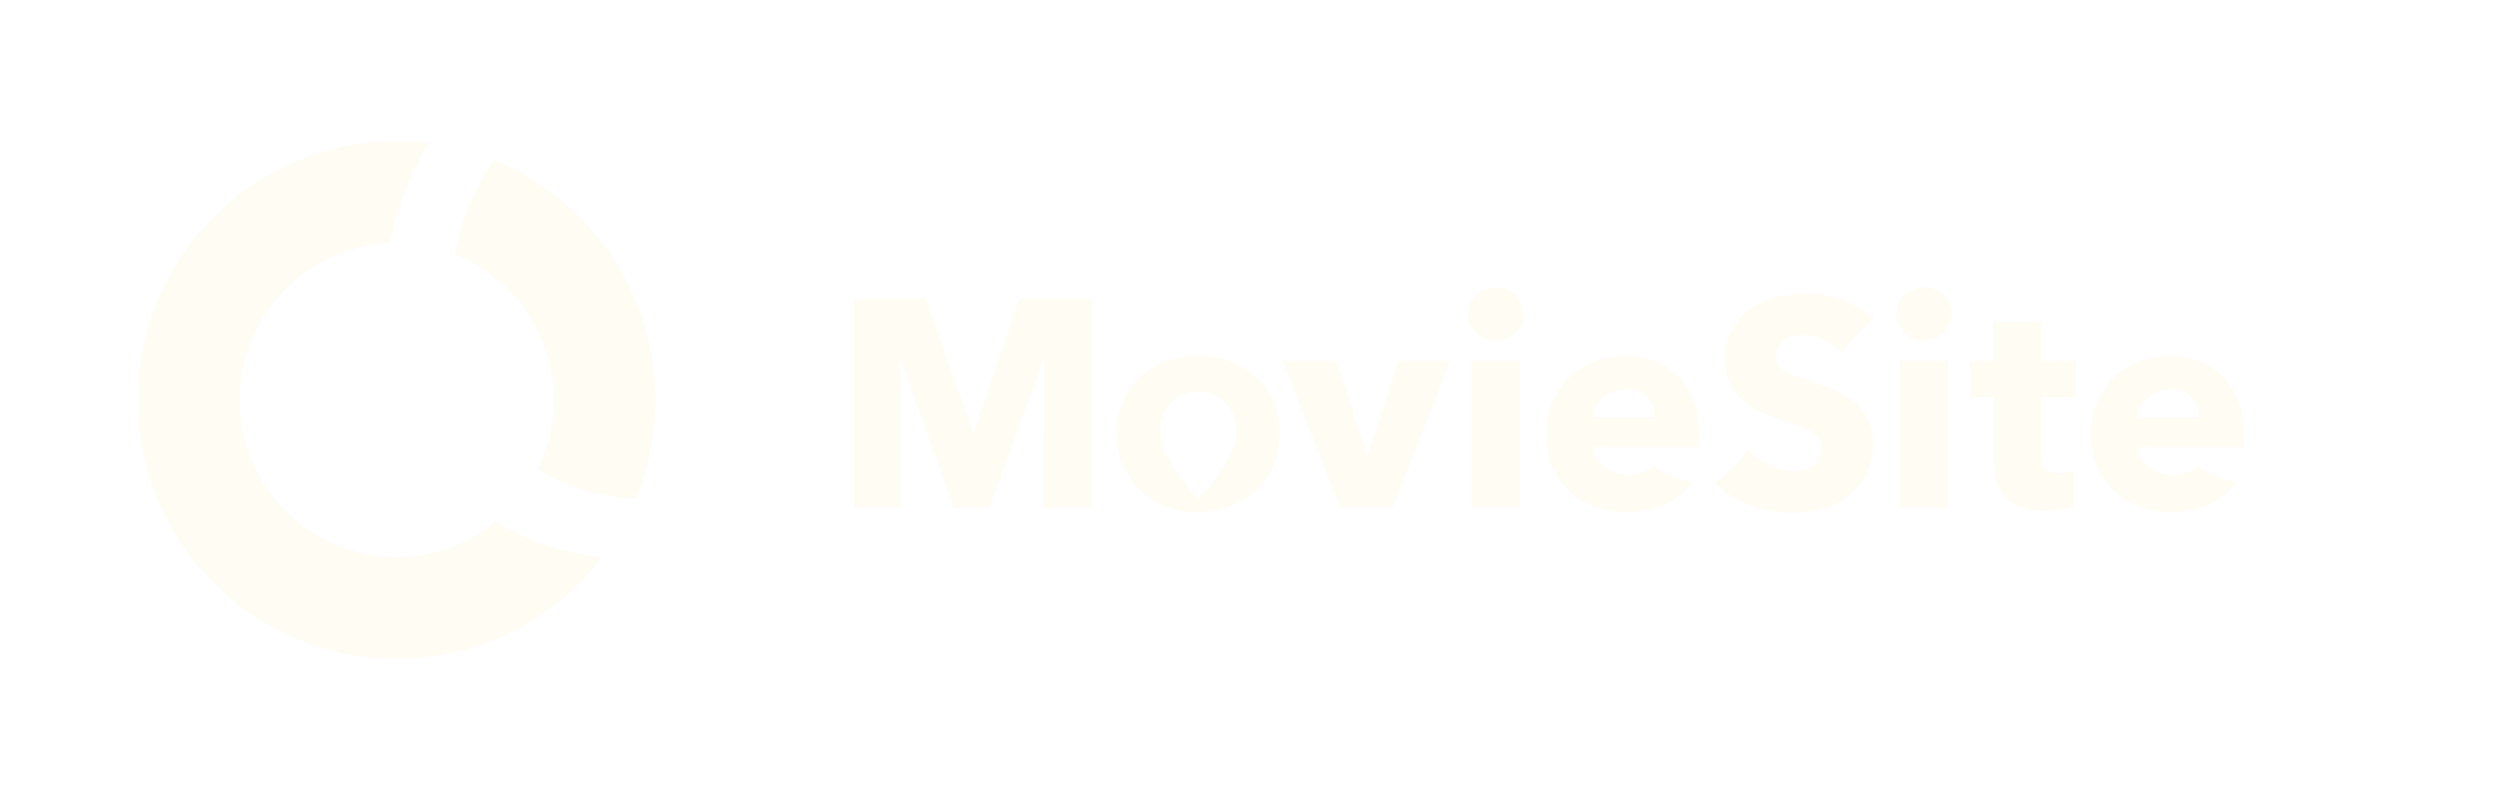 MovieSite Logo